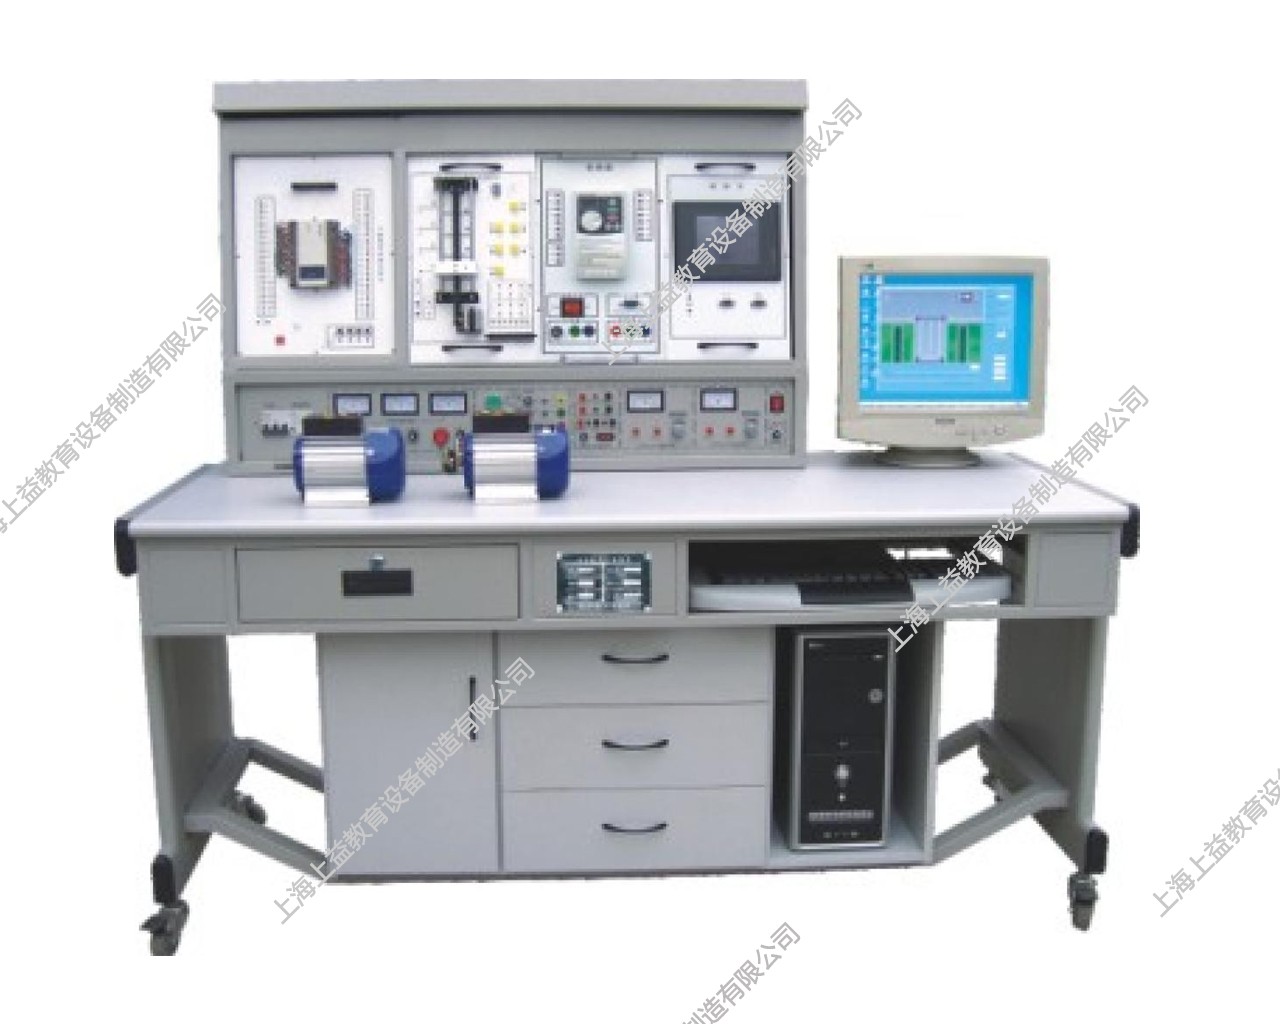 SYPLC-104B网络型PLC可编程控制器/变频调速/电气控制及单片机综合实验装置（PLC、变频器、触摸屏、电气控制、单片机）